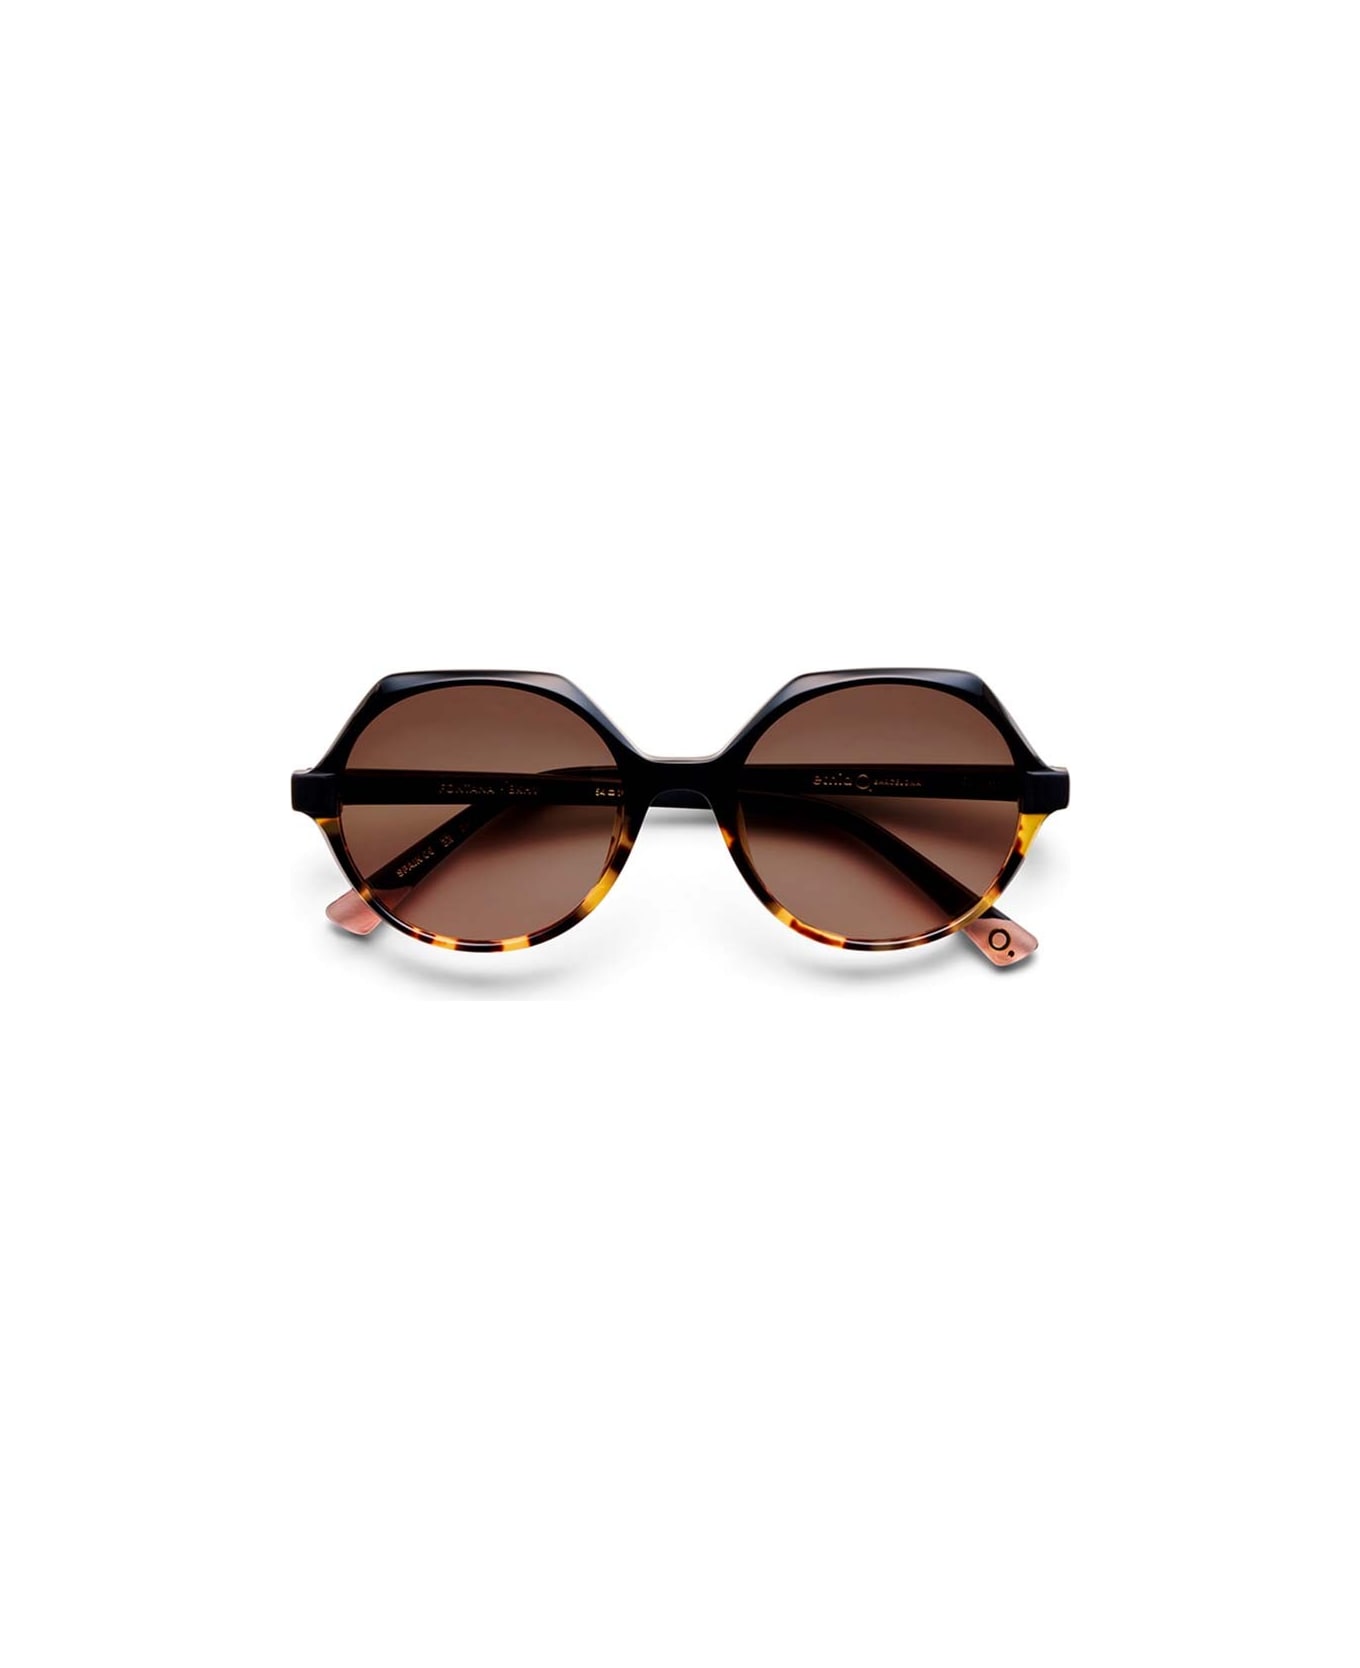 Etnia Barcelona Sunglasses - Nero/Marrone